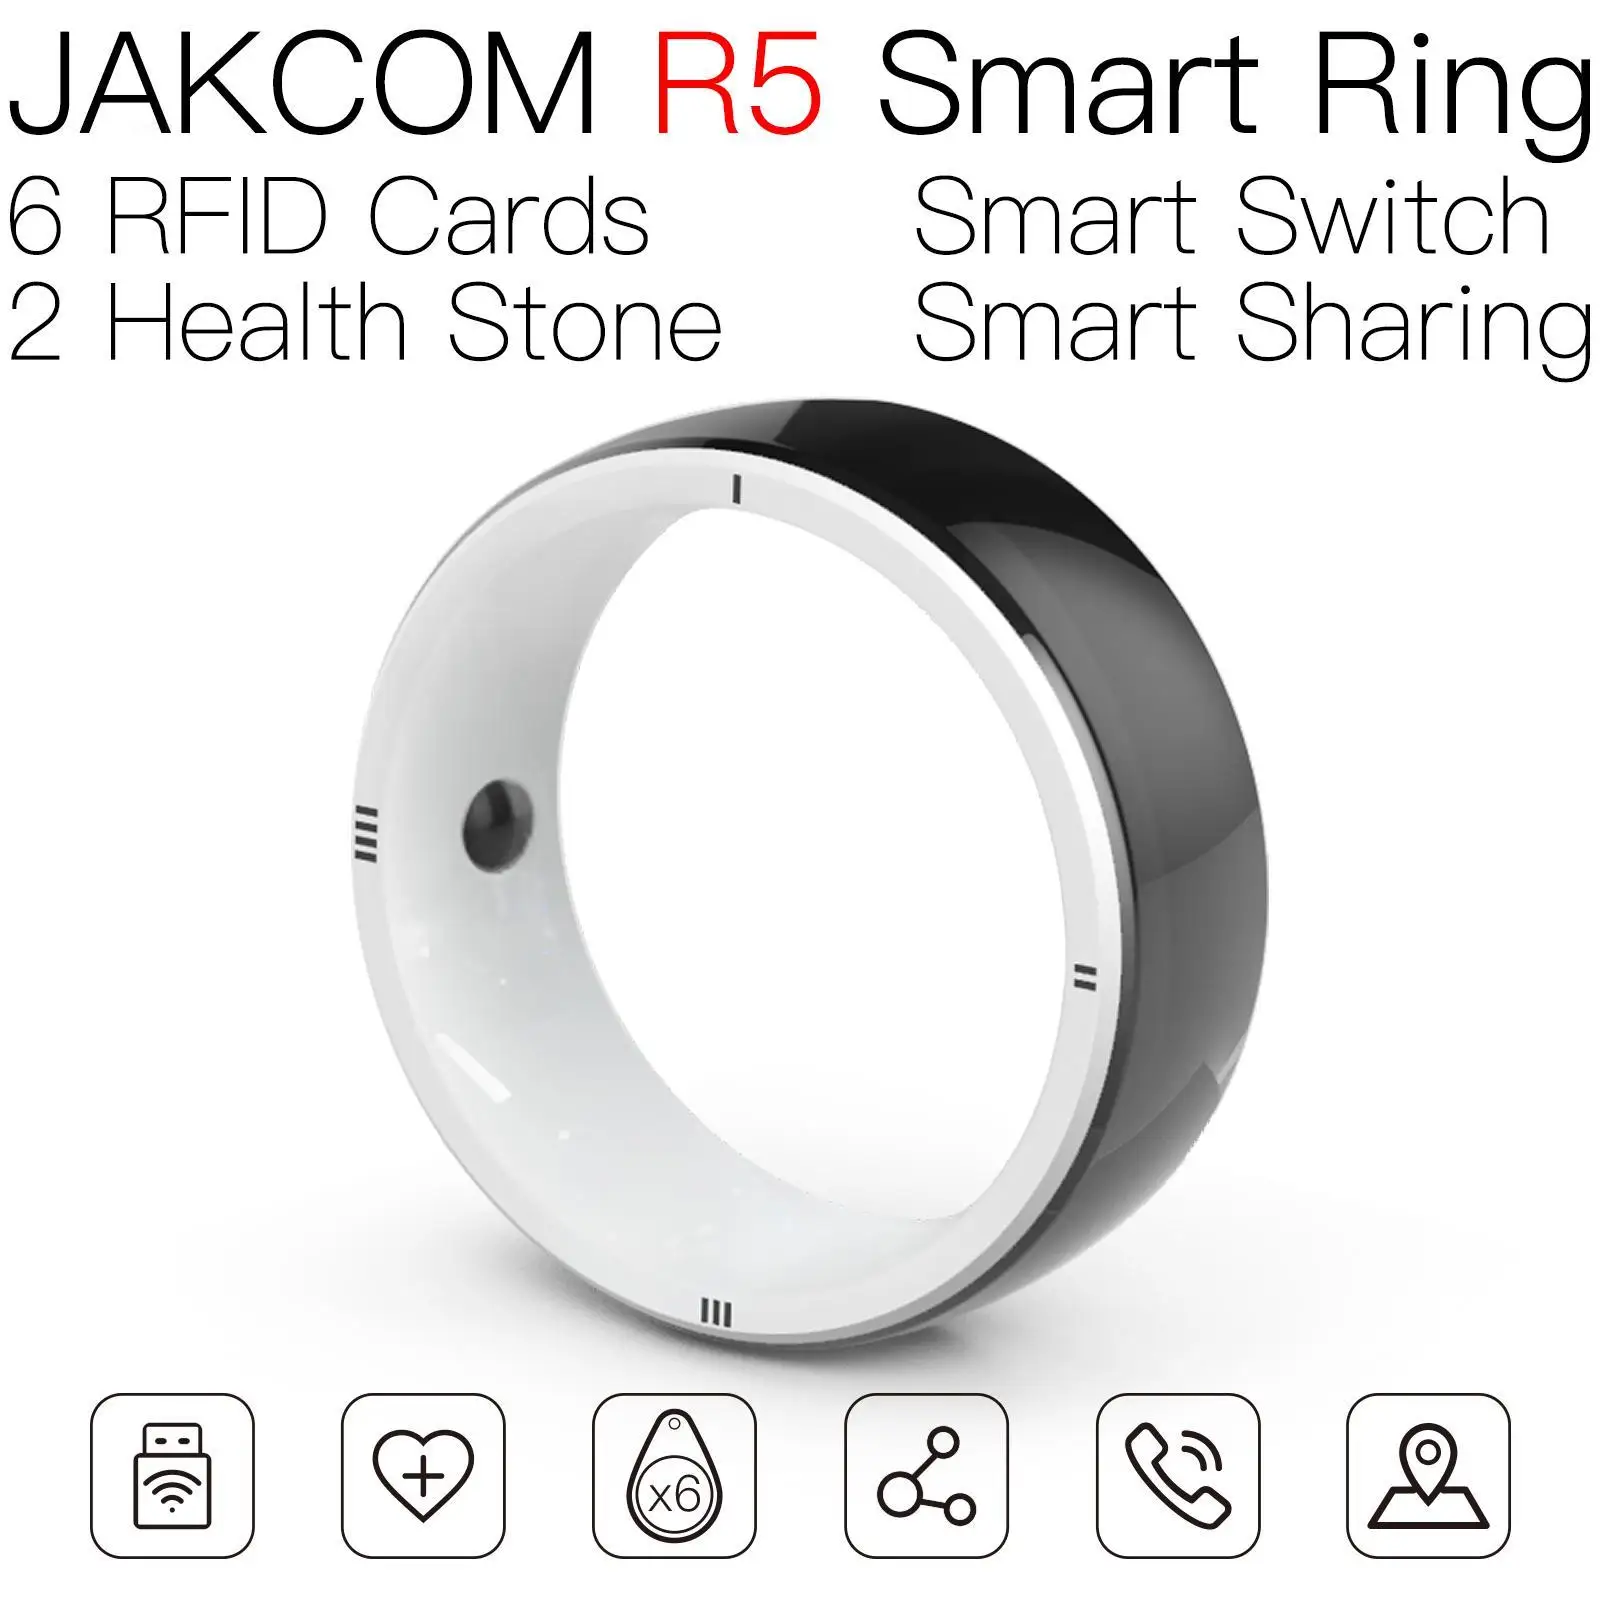 JAKCOM R5 Smart Ring Newer than rfid reader 134 sticker pay card kaisen chip em4100 nfc tags programmable nfca gatoman